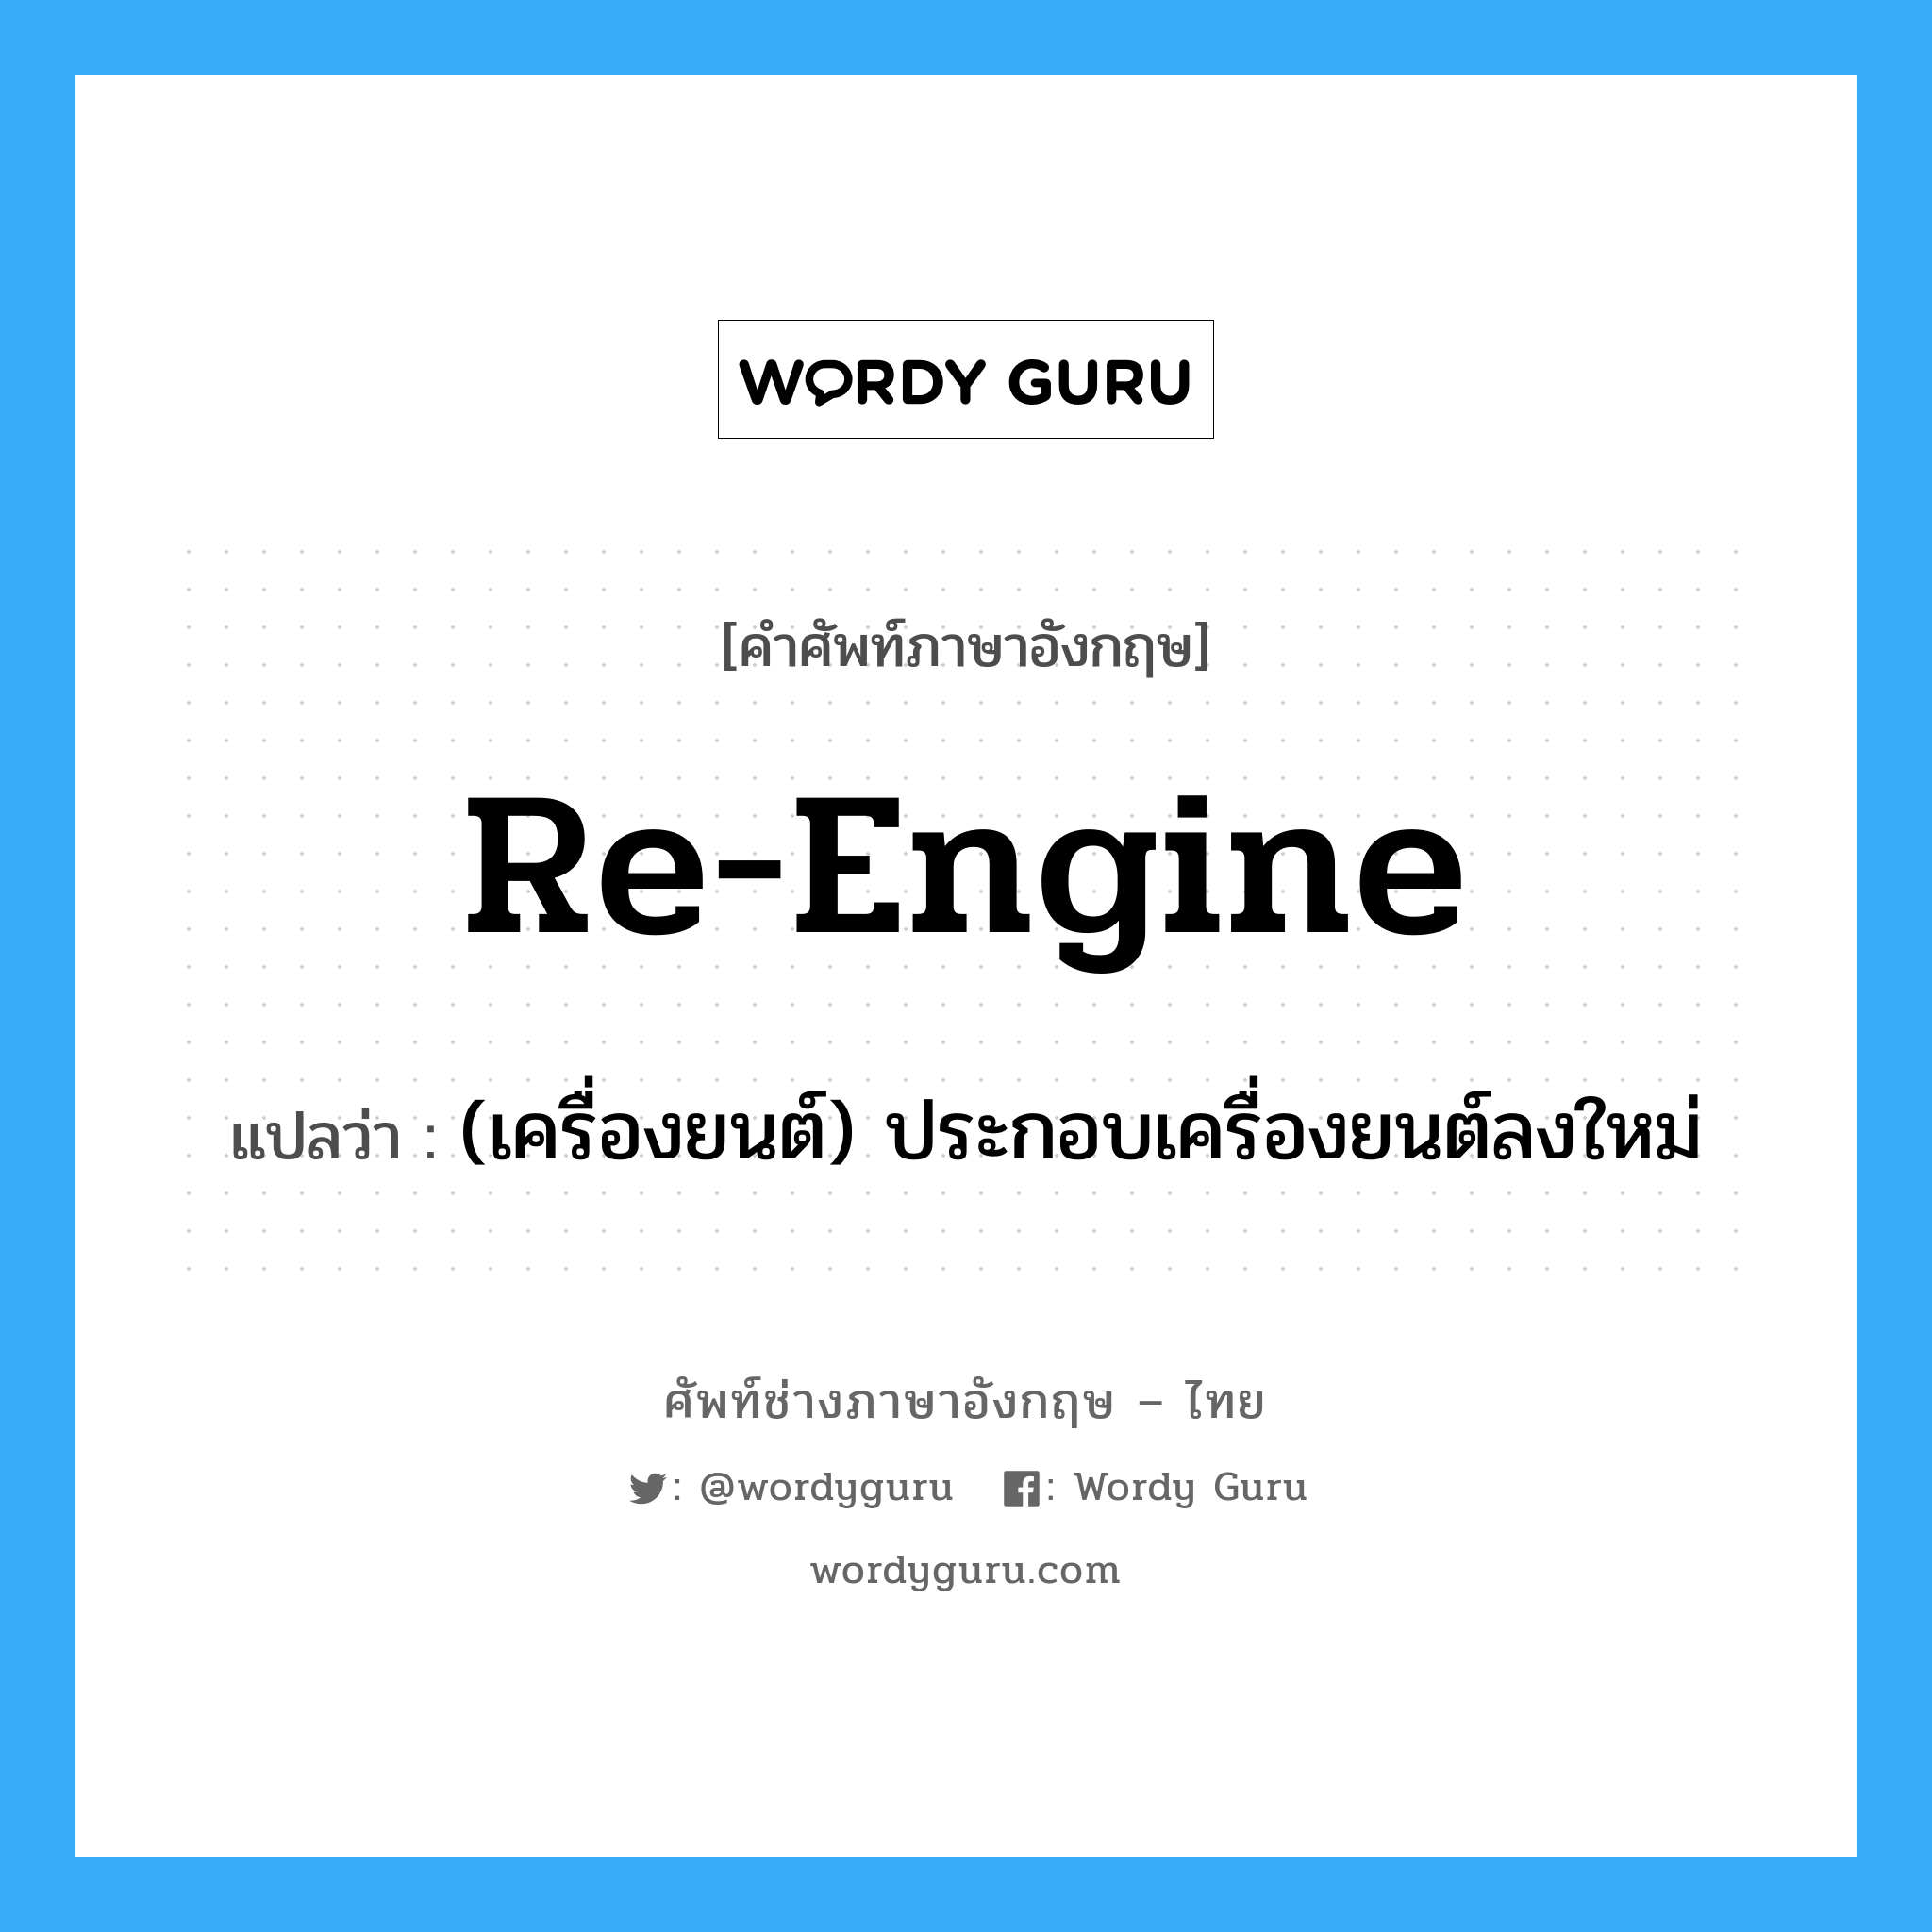 (เครื่องยนต์) ประกอบเครื่องยนต์ลงใหม่ ภาษาอังกฤษ?, คำศัพท์ช่างภาษาอังกฤษ - ไทย (เครื่องยนต์) ประกอบเครื่องยนต์ลงใหม่ คำศัพท์ภาษาอังกฤษ (เครื่องยนต์) ประกอบเครื่องยนต์ลงใหม่ แปลว่า re-engine